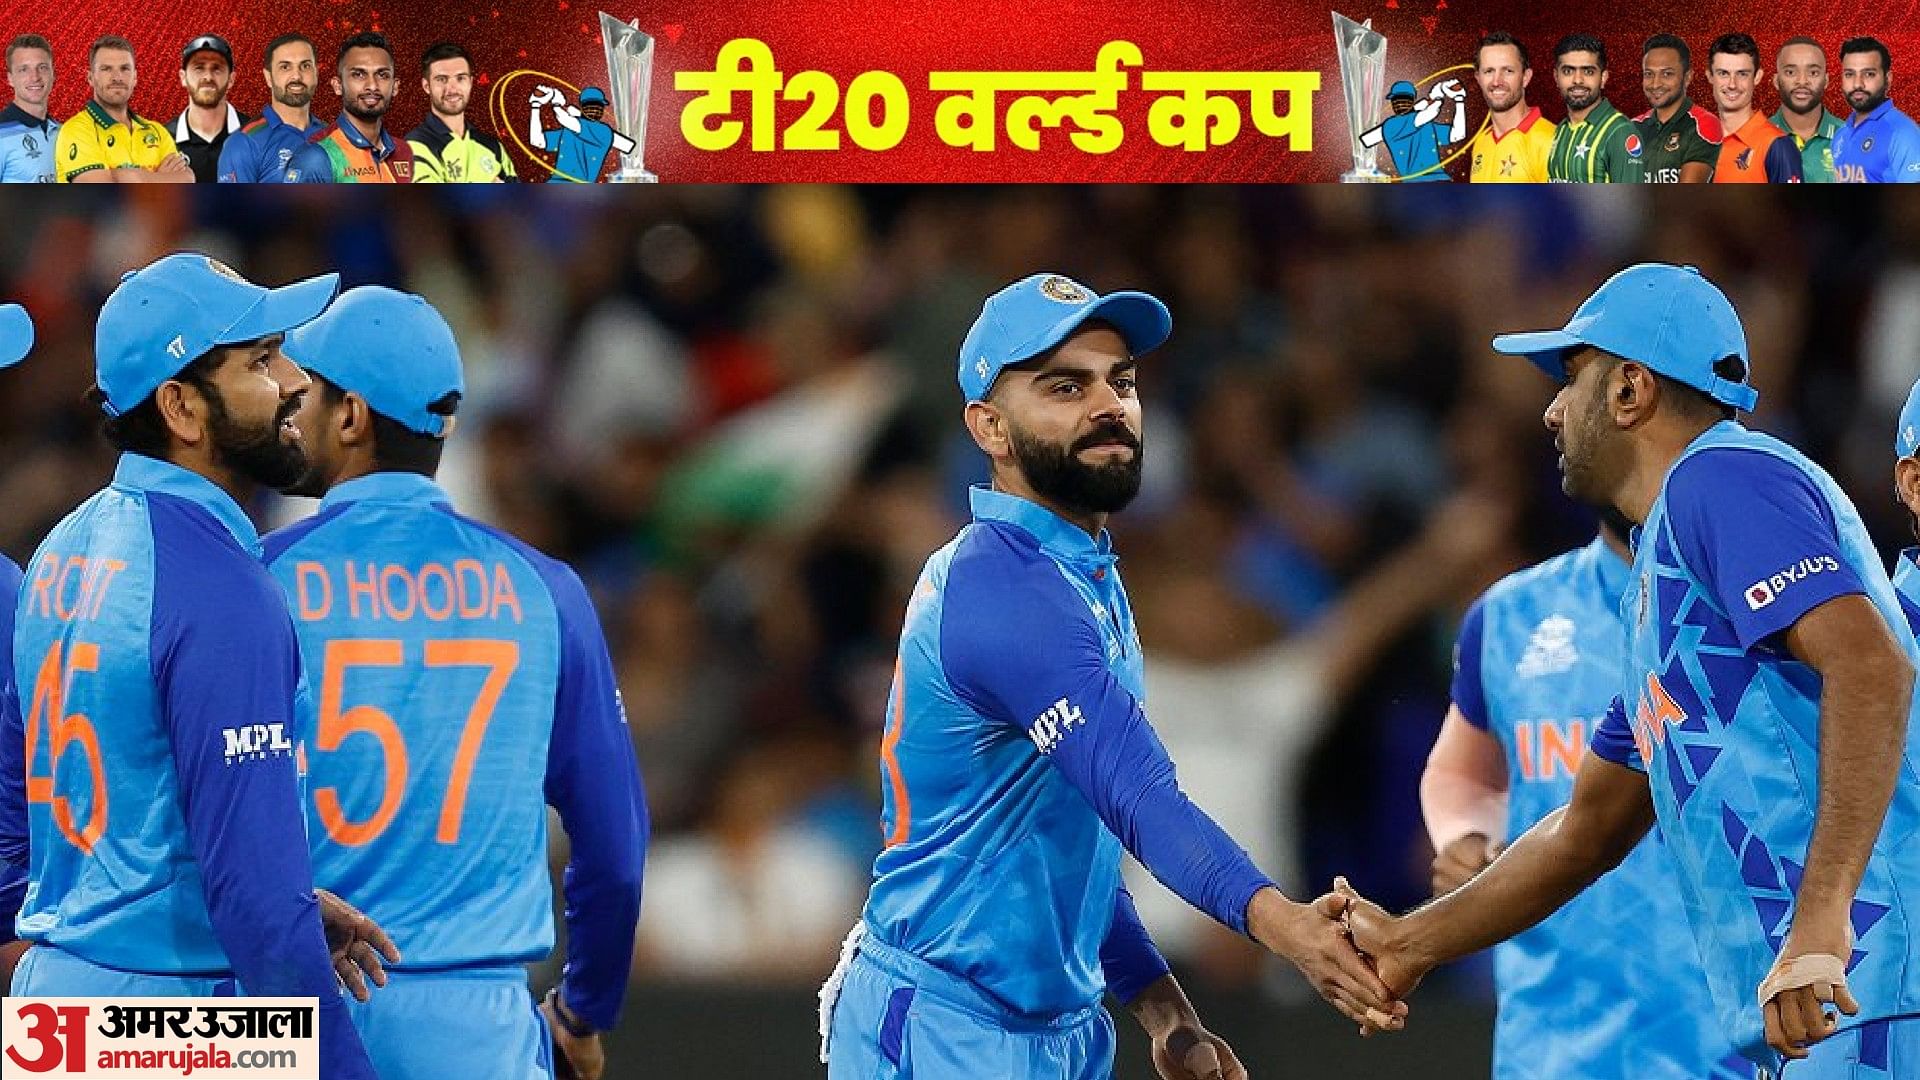 Ind Vs Eng Highlightsसेमीफाइनल में भारत की शर्मनाक हार, इंग्लैंड ने 10 विकेट से रौंदा, पाकिस्तान से फाइनल